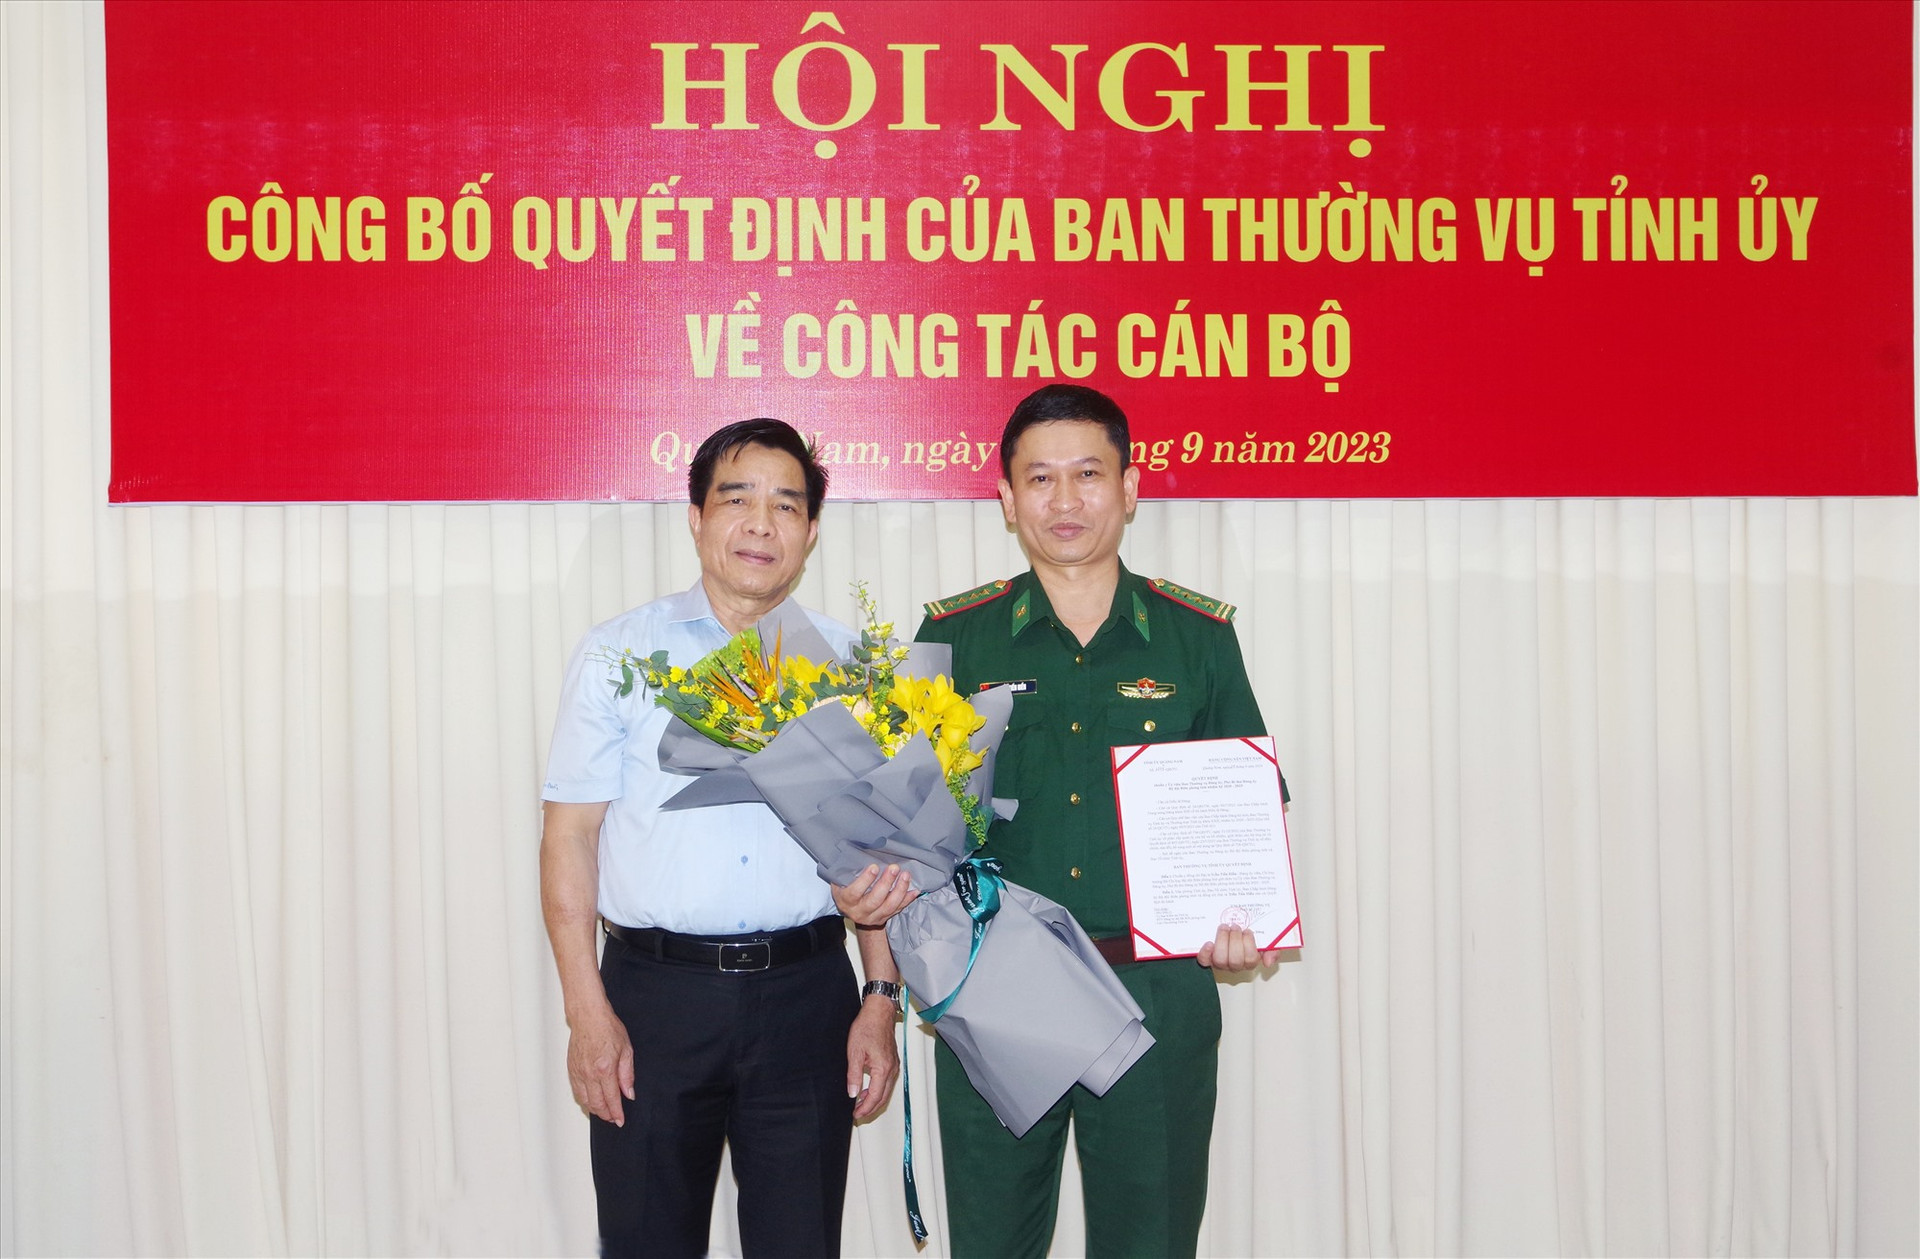 Phó Bí thư Tỉnh ủy Lê Văn Dũng đã trao quyết định và tặng hoa cho Đại tá Trần Tiến Hiền. Ảnh: HỒNG ANH